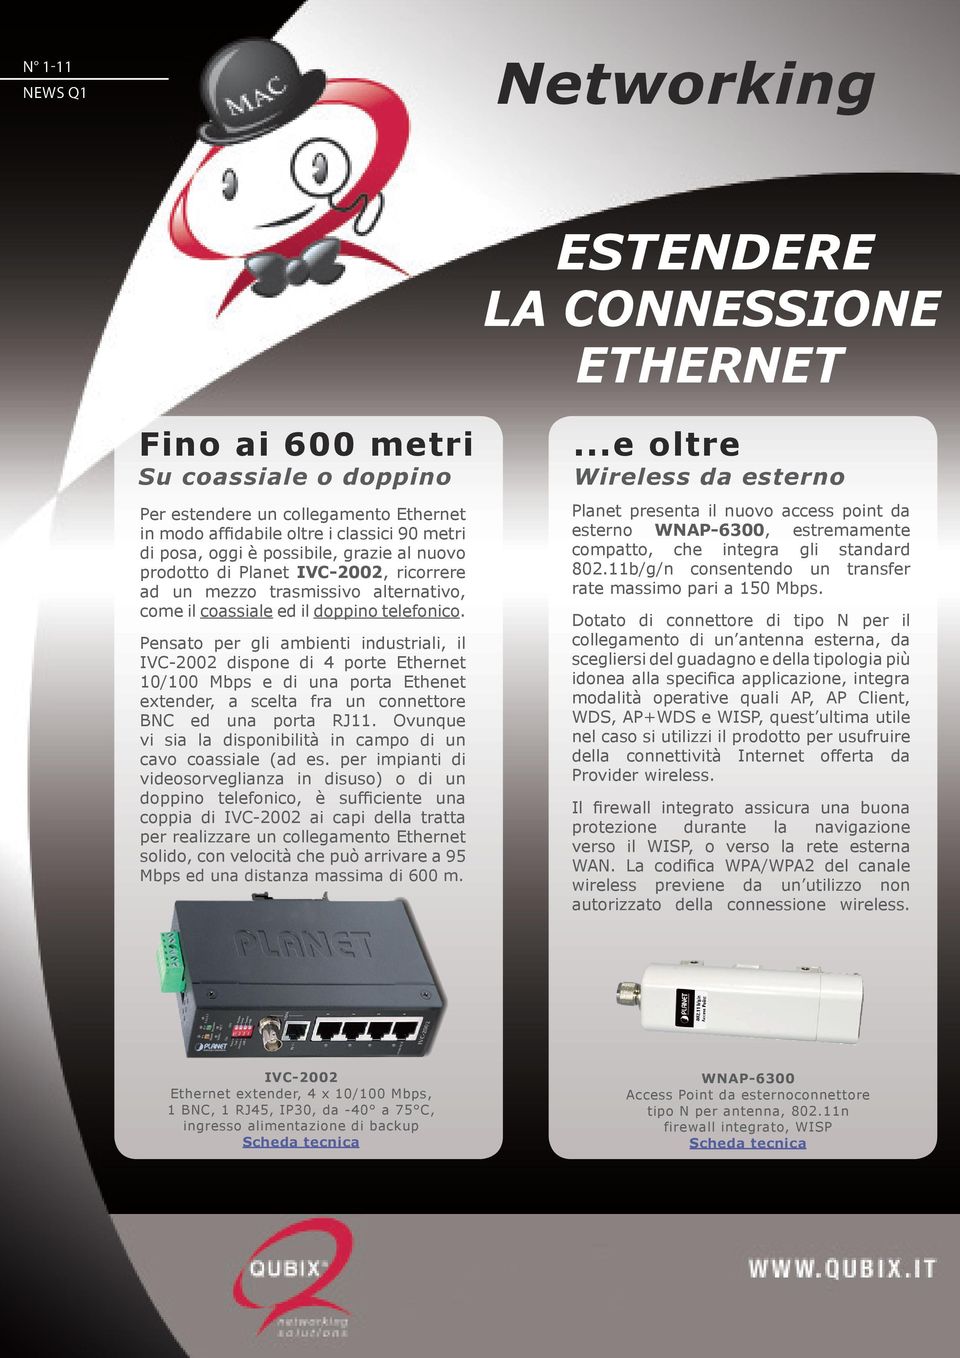 Pensato per gli ambienti industriali, il IVC-2002 dispone di 4 porte Ethernet 10/100 Mbps e di una porta Ethenet extender, a scelta fra un connettore BNC ed una porta RJ11.